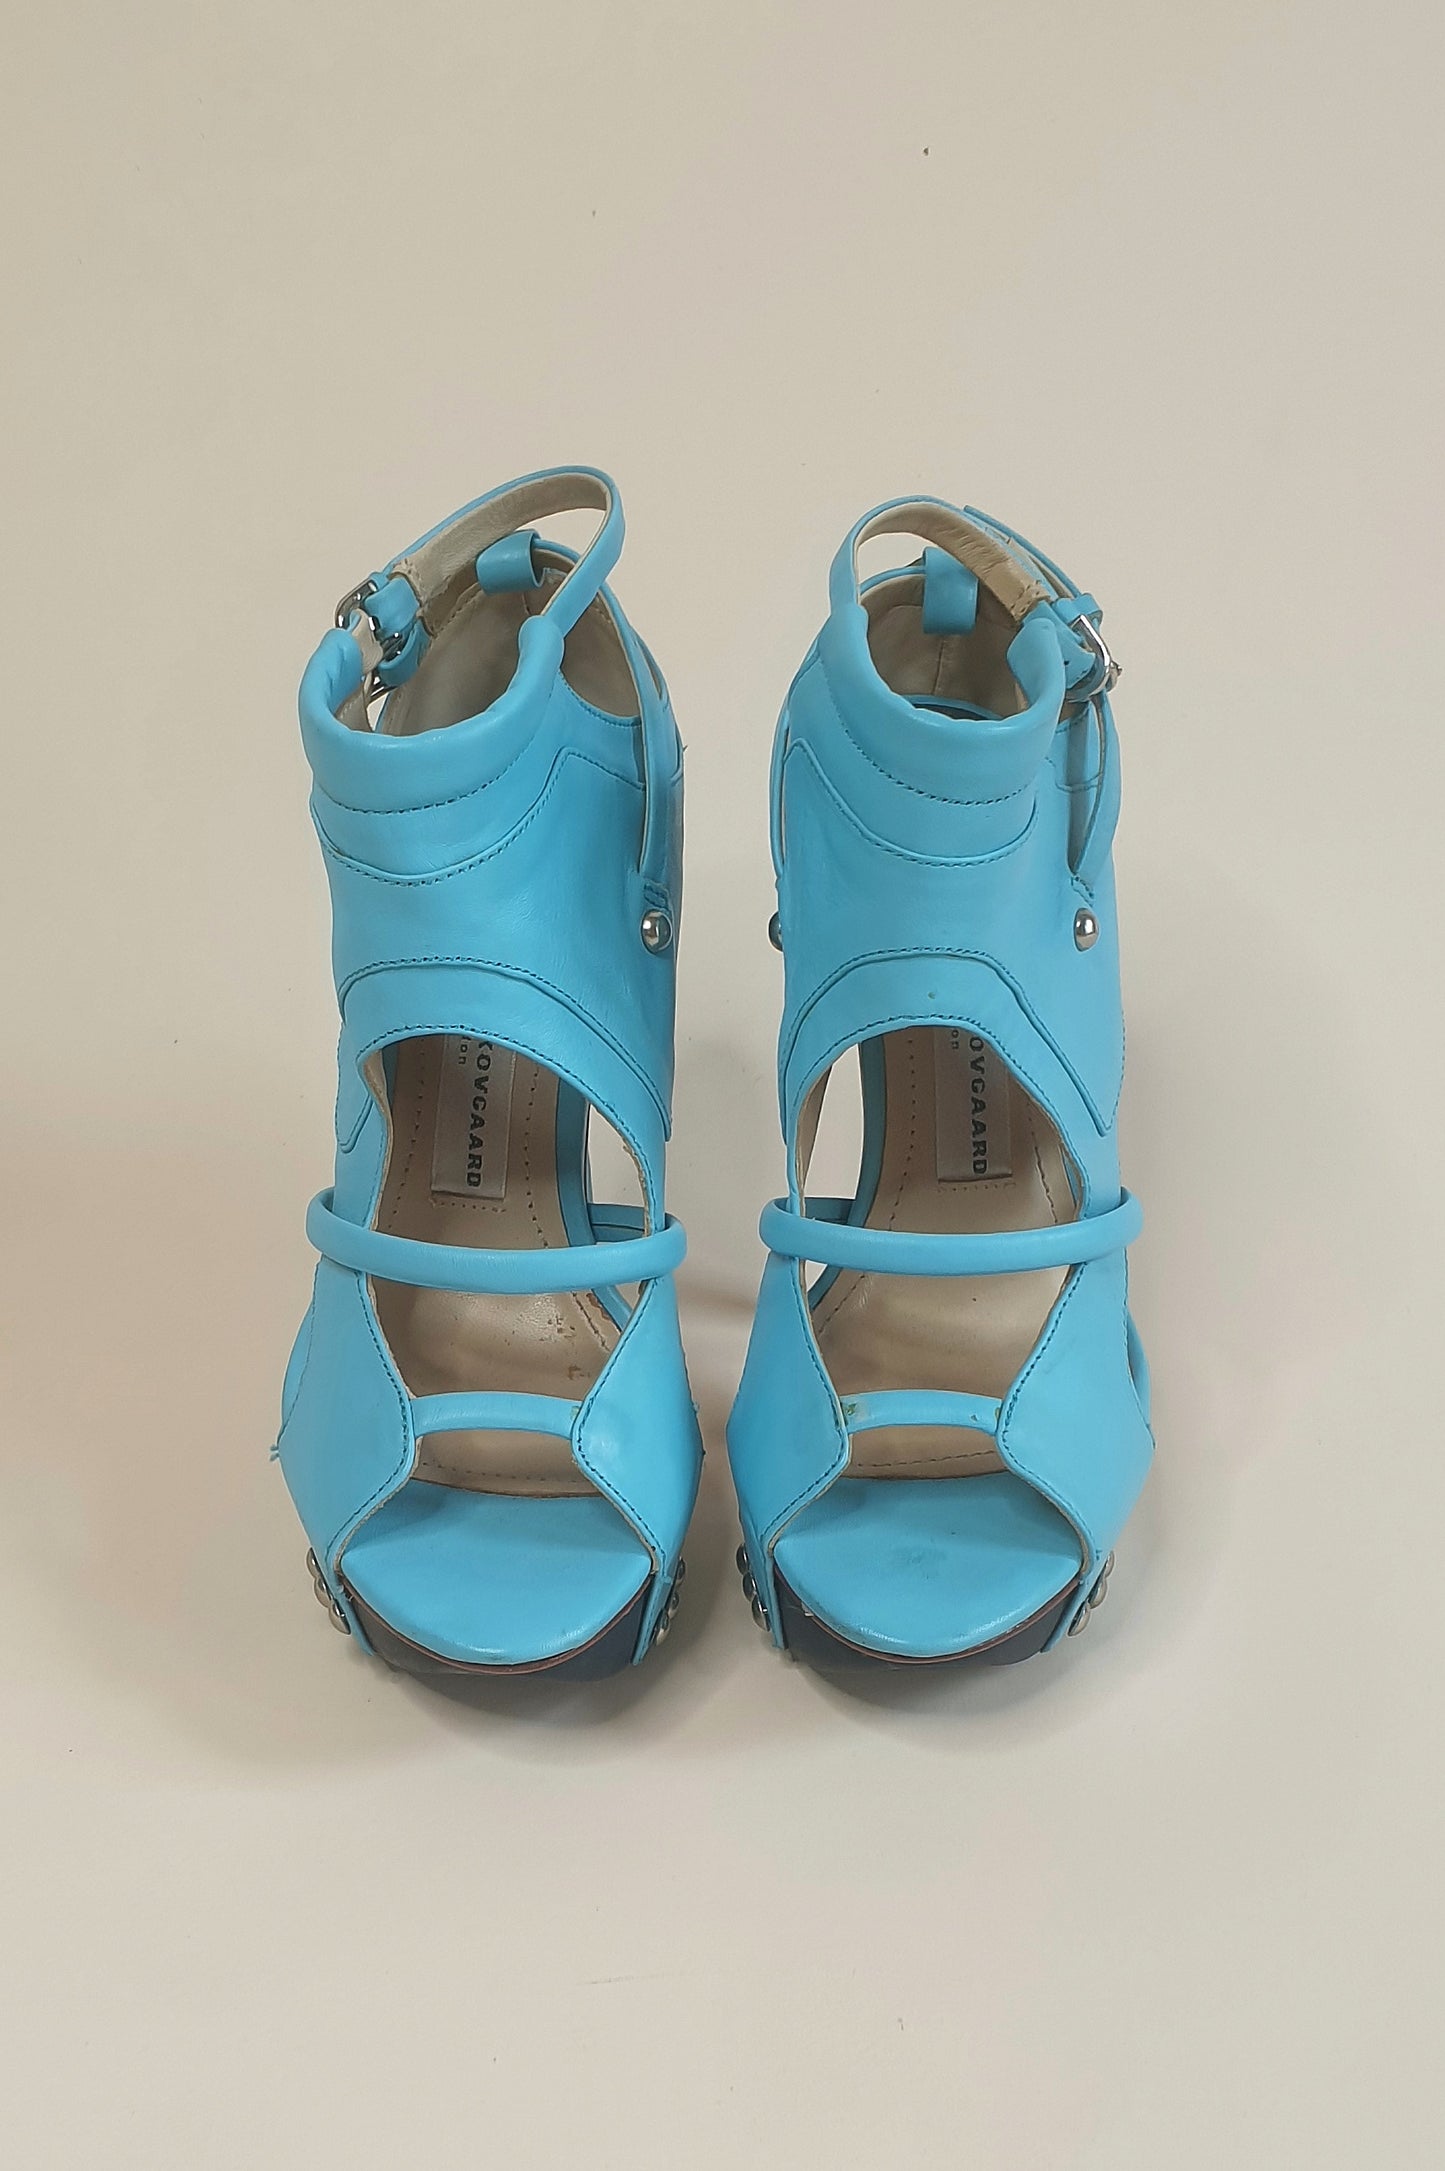 Incredible Camilla Skovgaard platform stiletto booties Size 36